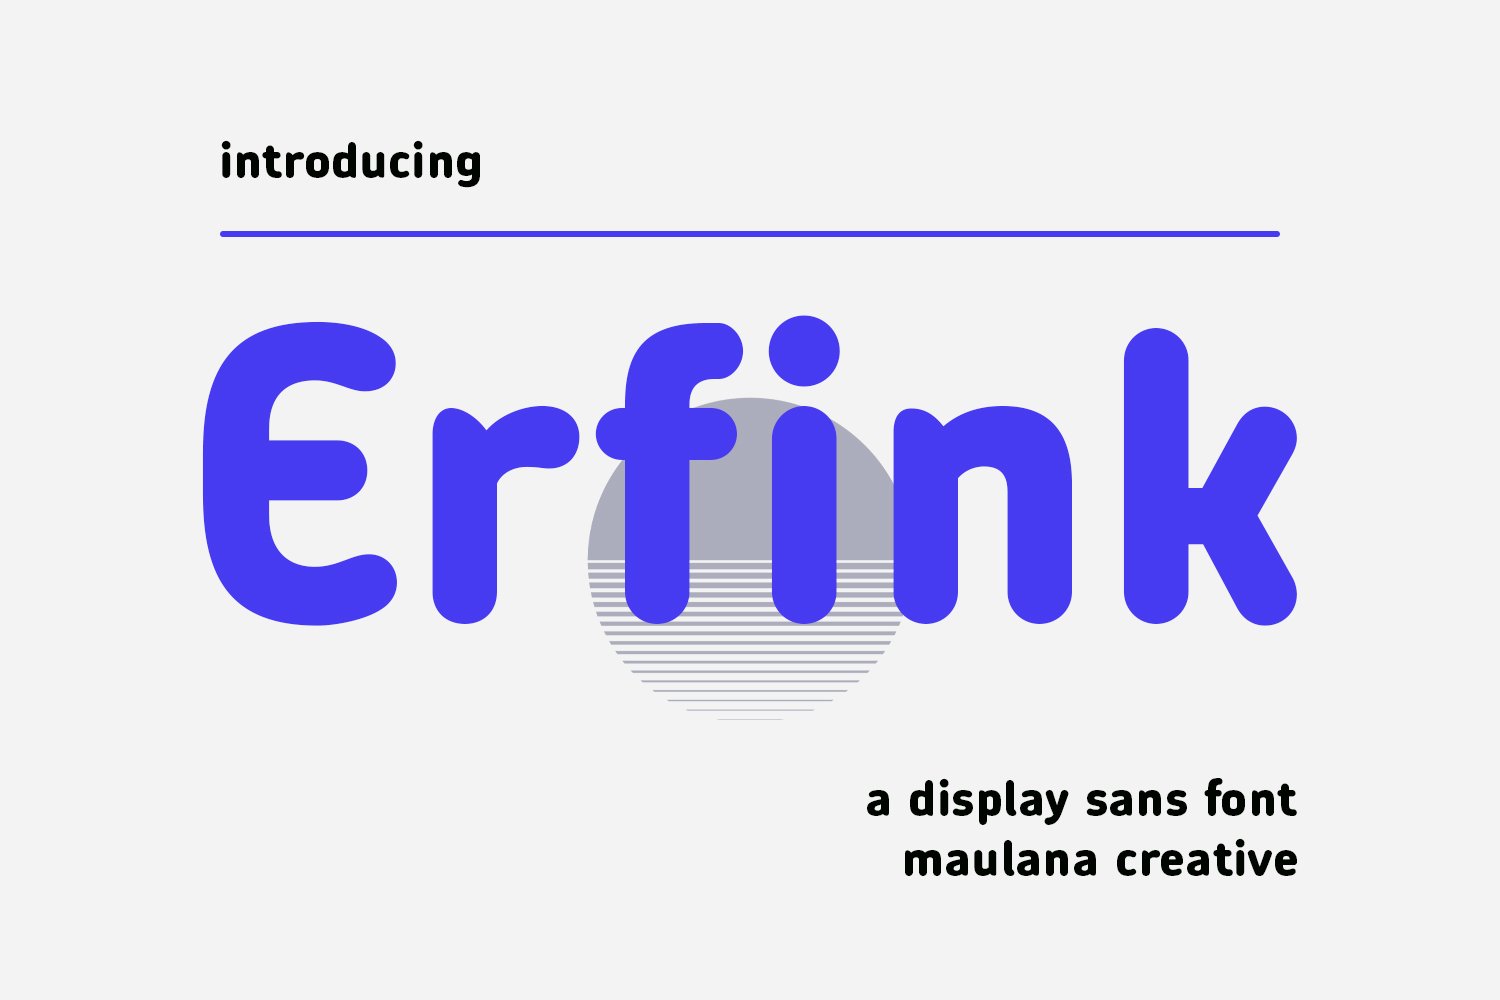 Erfink Sans Display Font cover image.